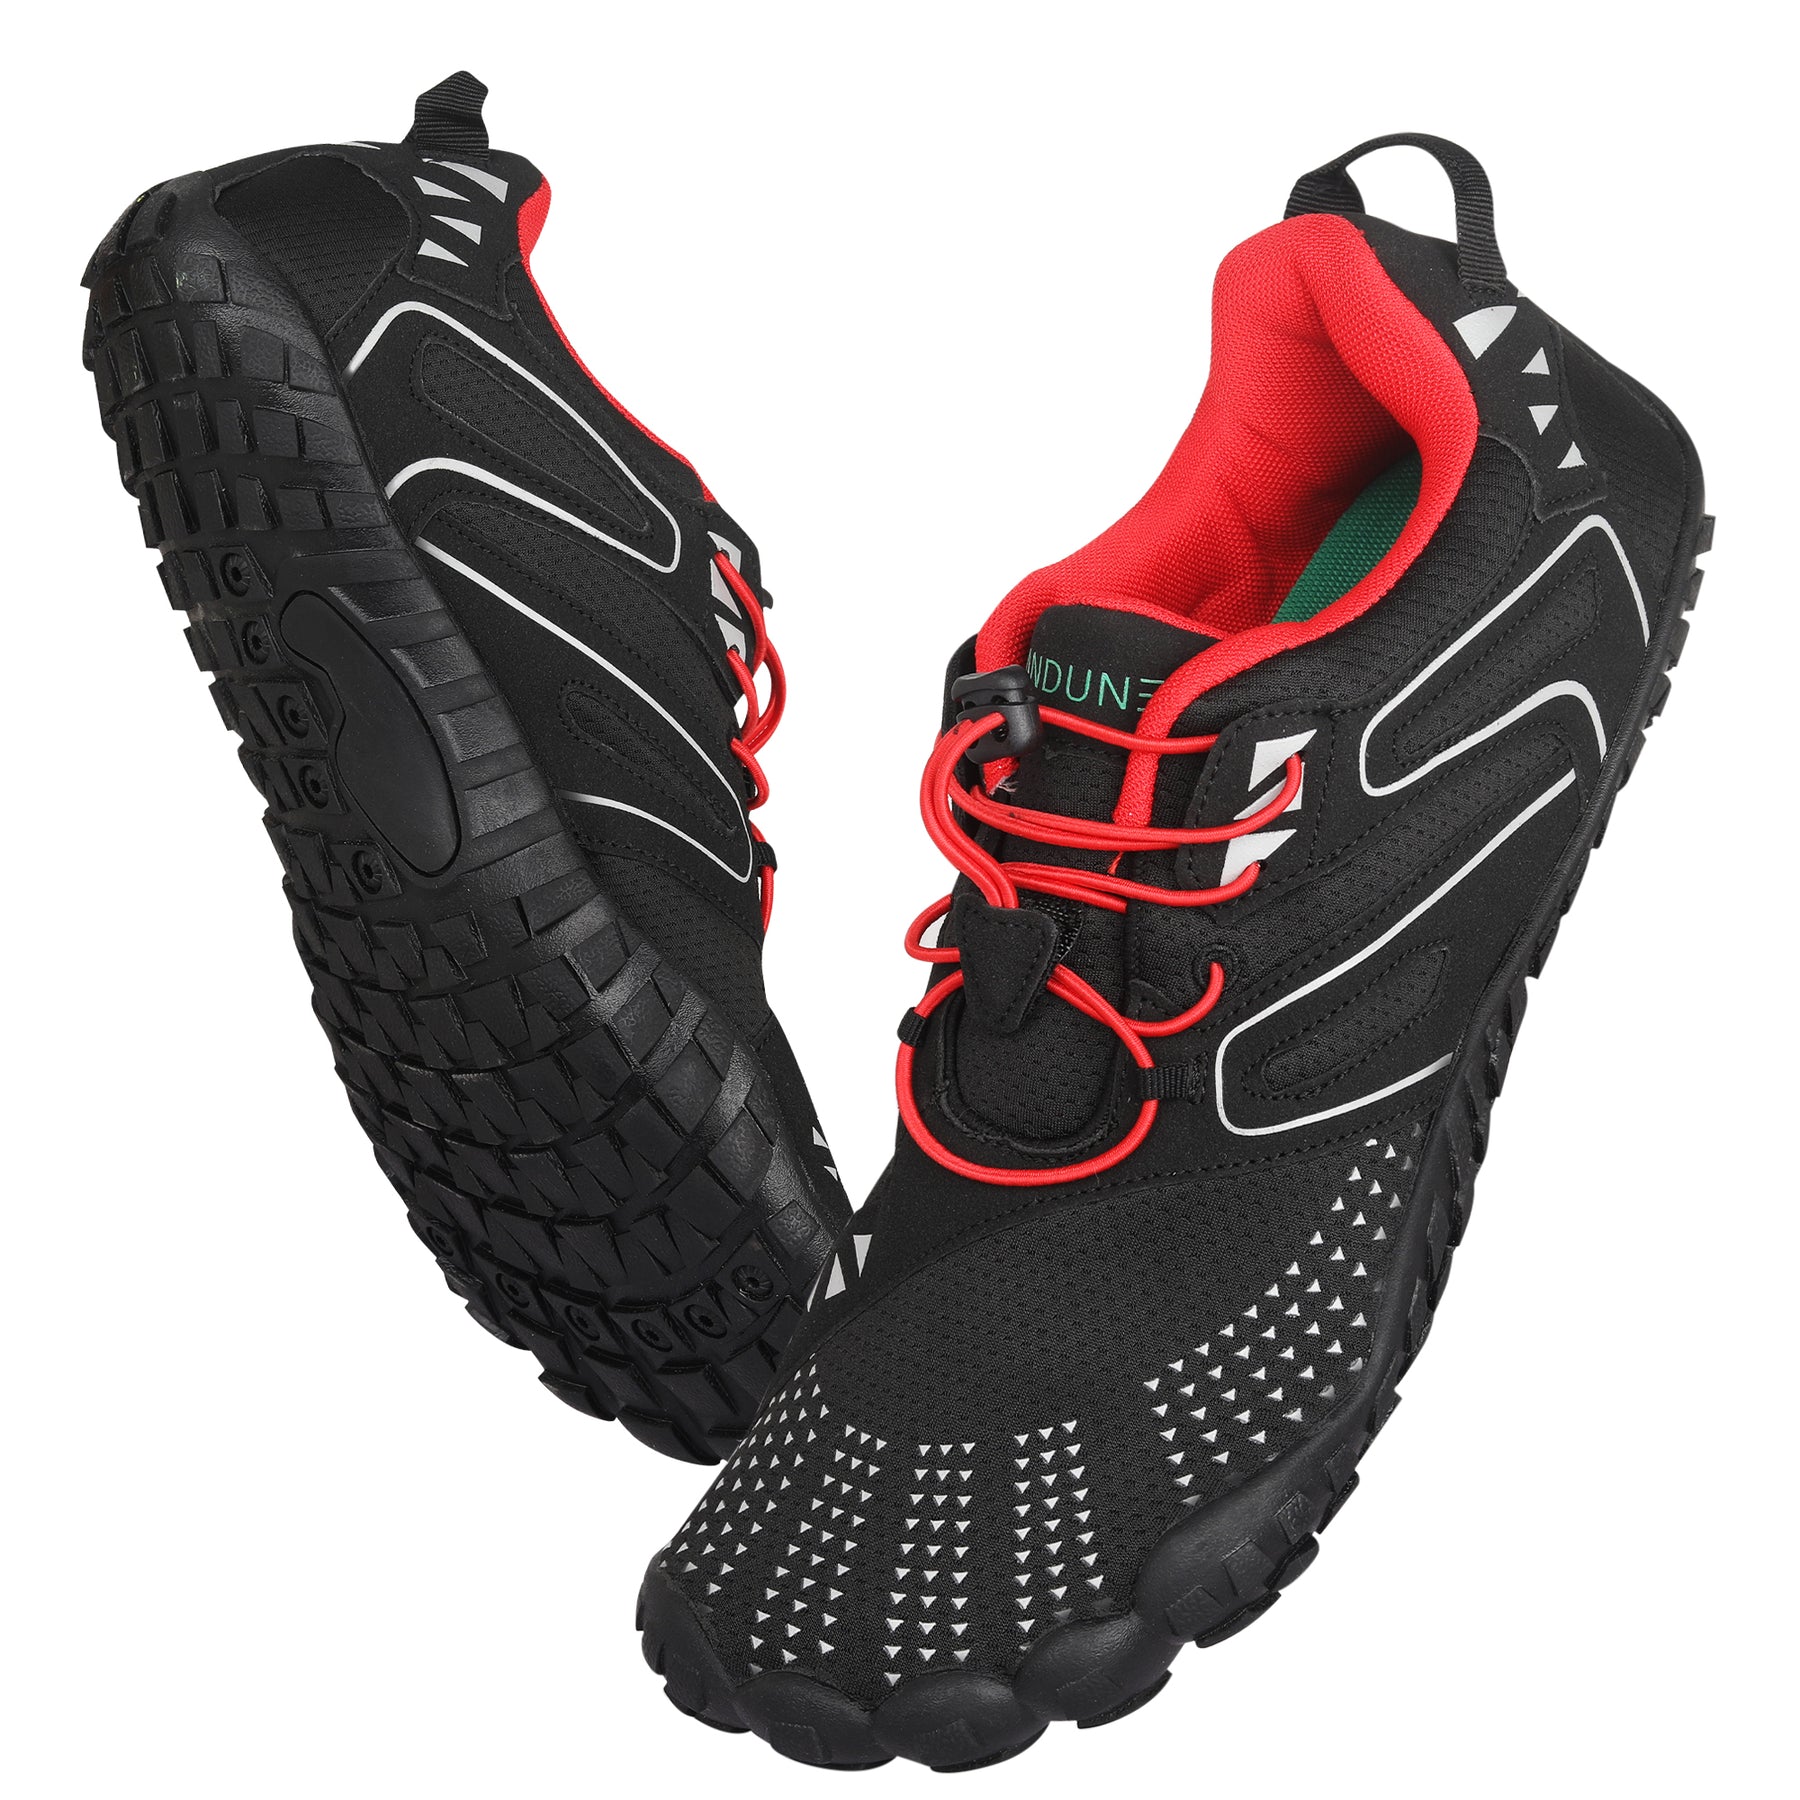 ANDUNE Men’s Barefoot & Minimalist Cross Training Shoes – All Terrain Red Dash